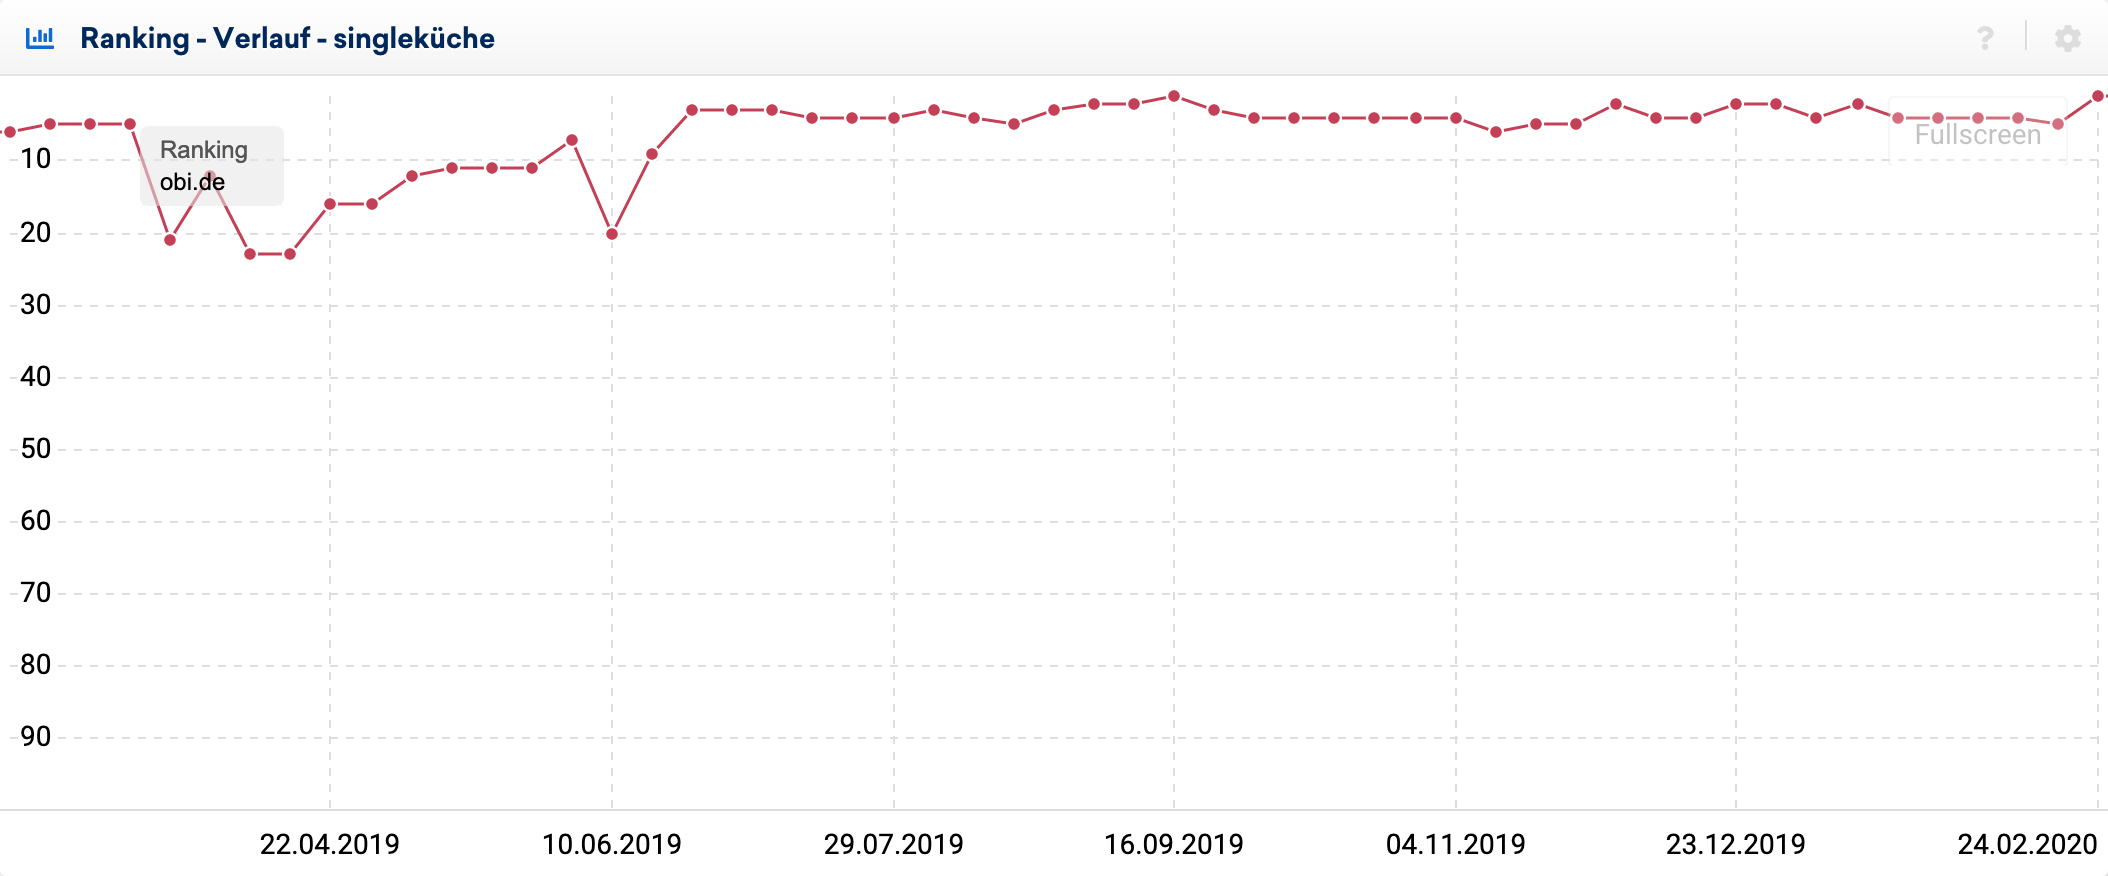 Ranking-Verlauf für die Domain obi.de bei dem Keyword singleküche zwischen Februar 2019 und Februar 2020. Zwischen März 2019 und Juli 2019 gibt es einen Einbruch, seitdem hat sich der Verlauf wieder in den Top10 gefestigt.